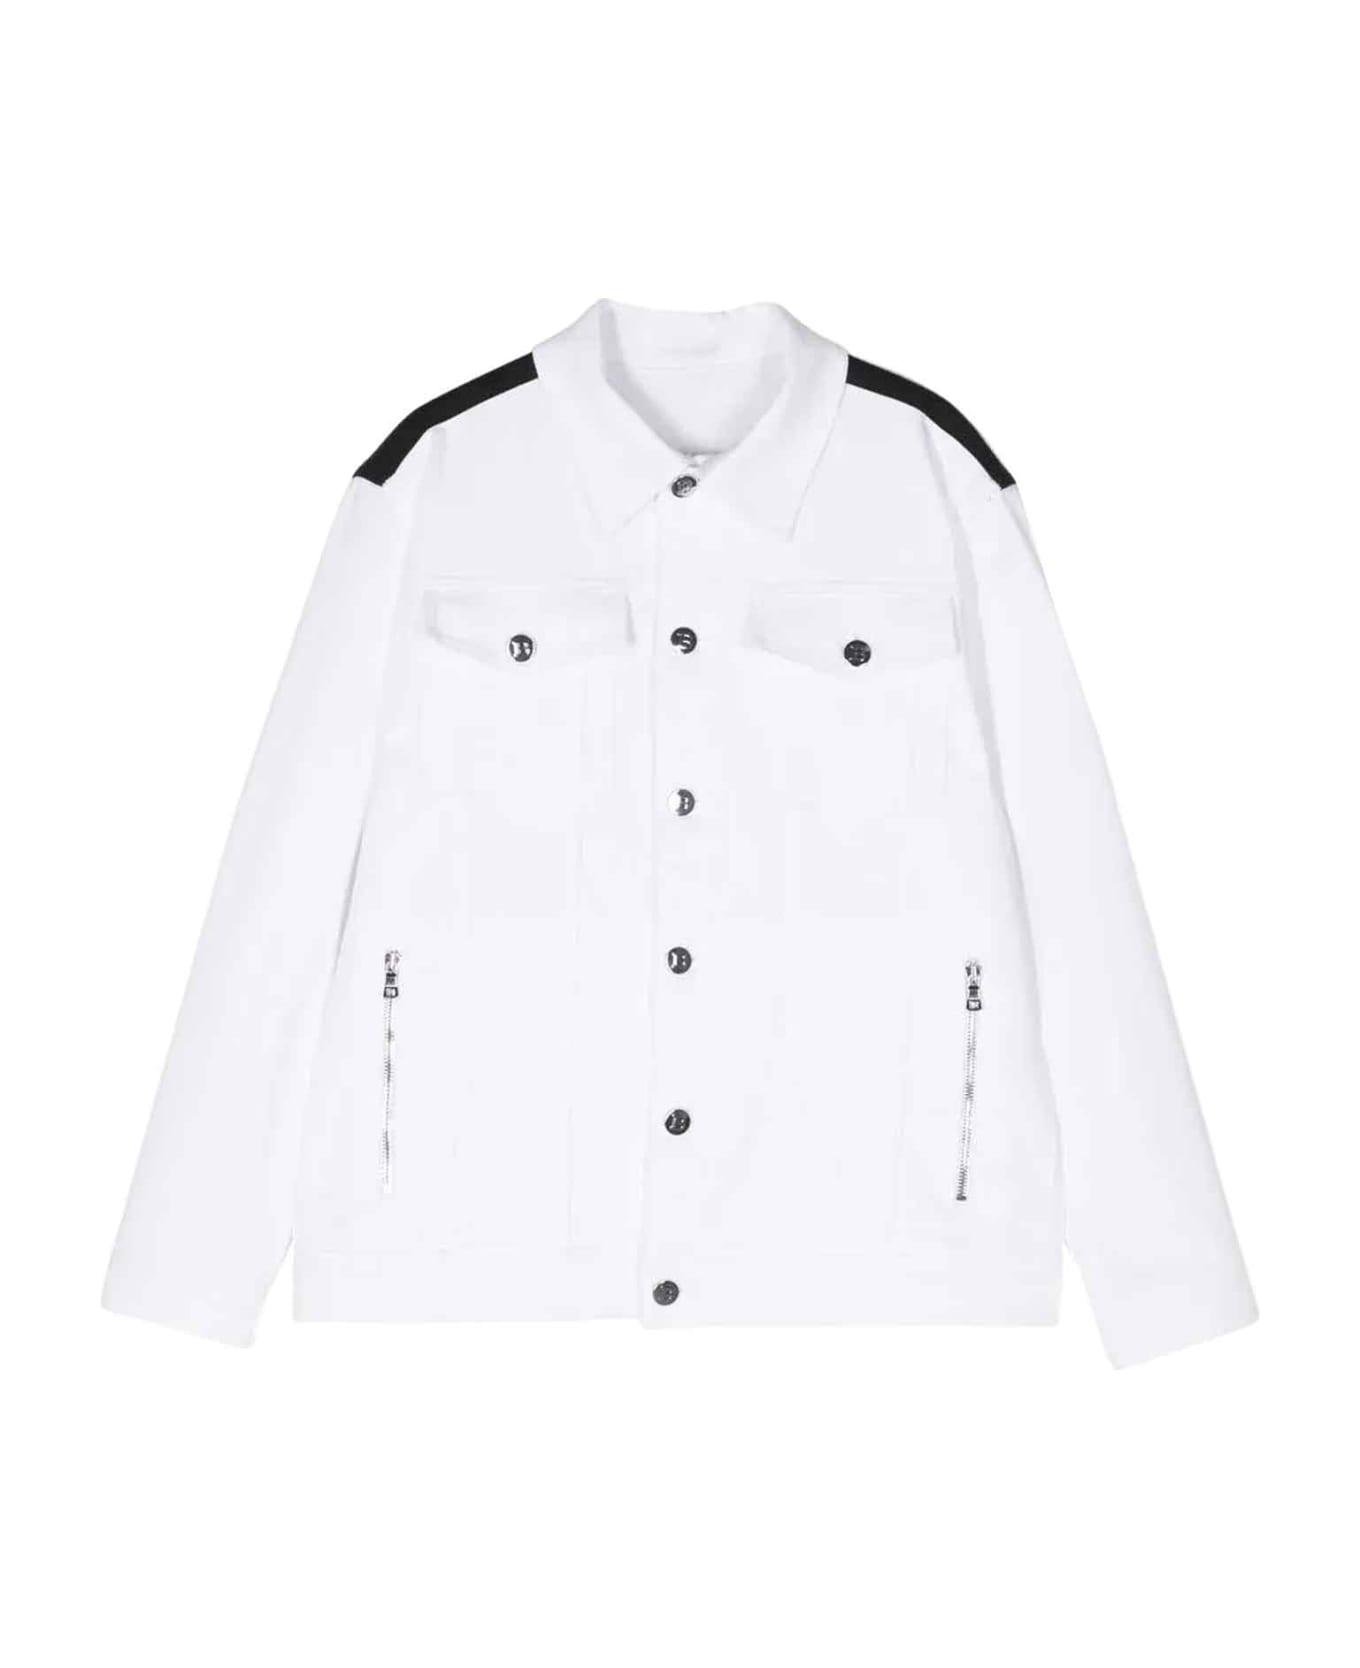 Balmain White Jacket Unisex - Bianco/nero